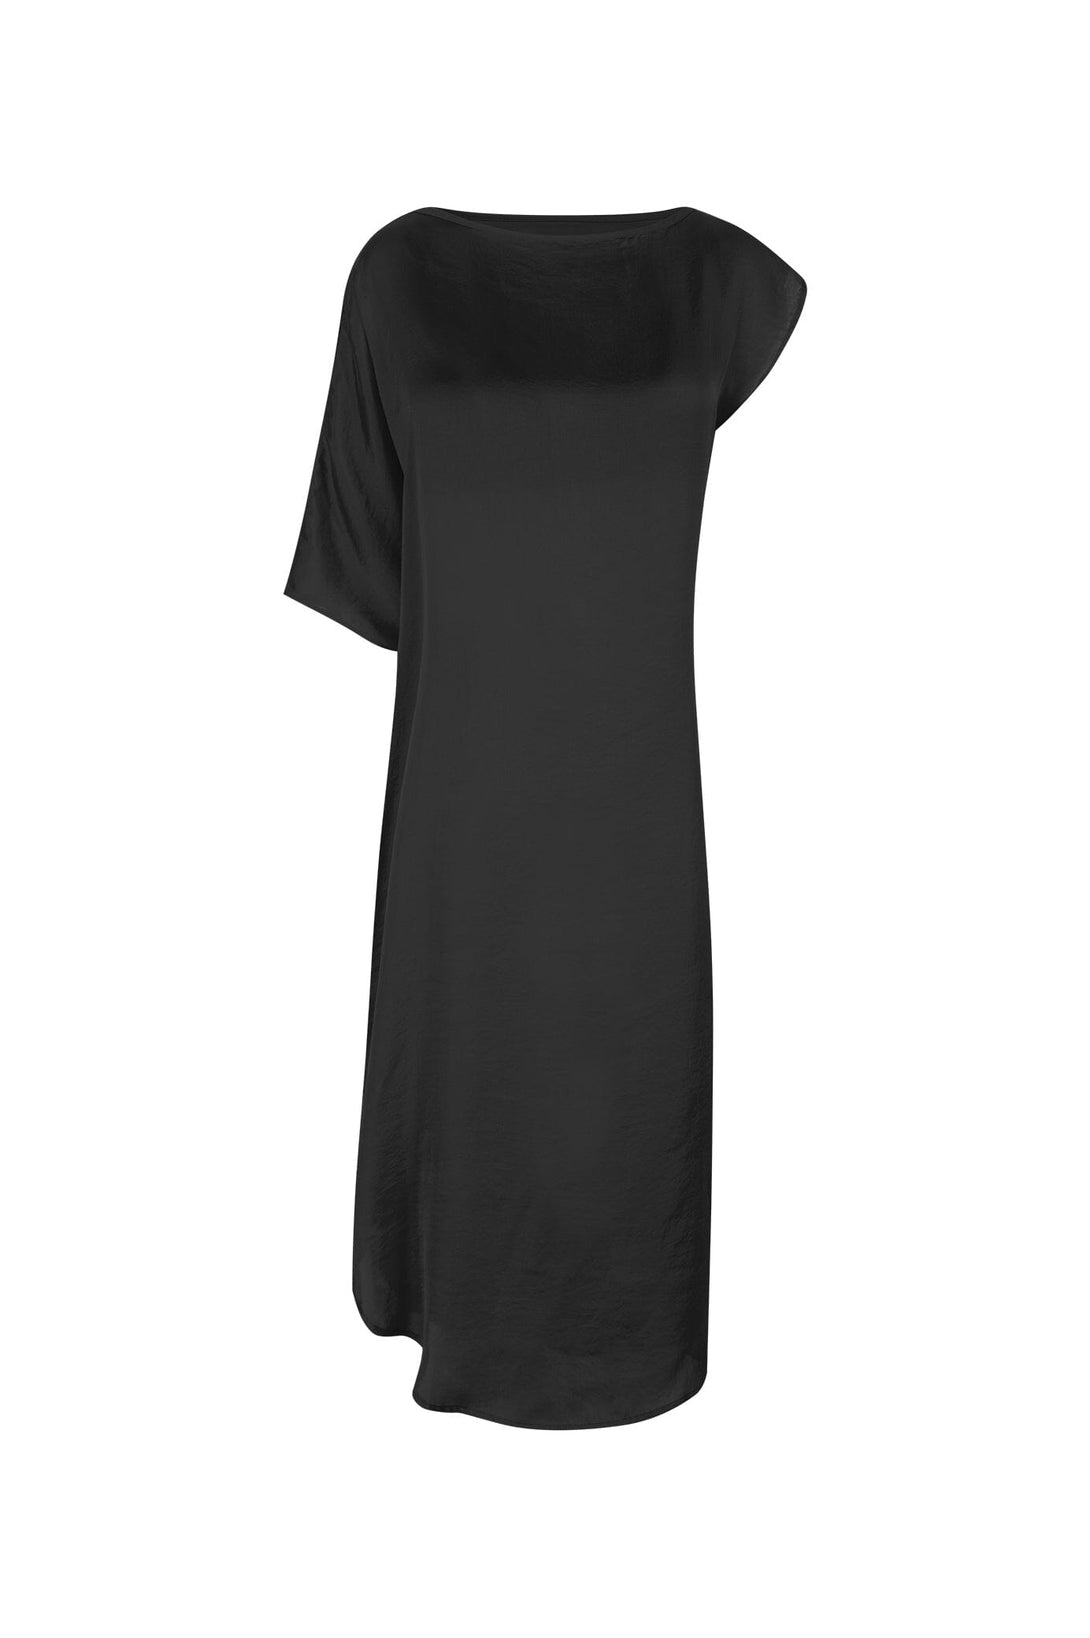 St. Tropez Dress Black Dress